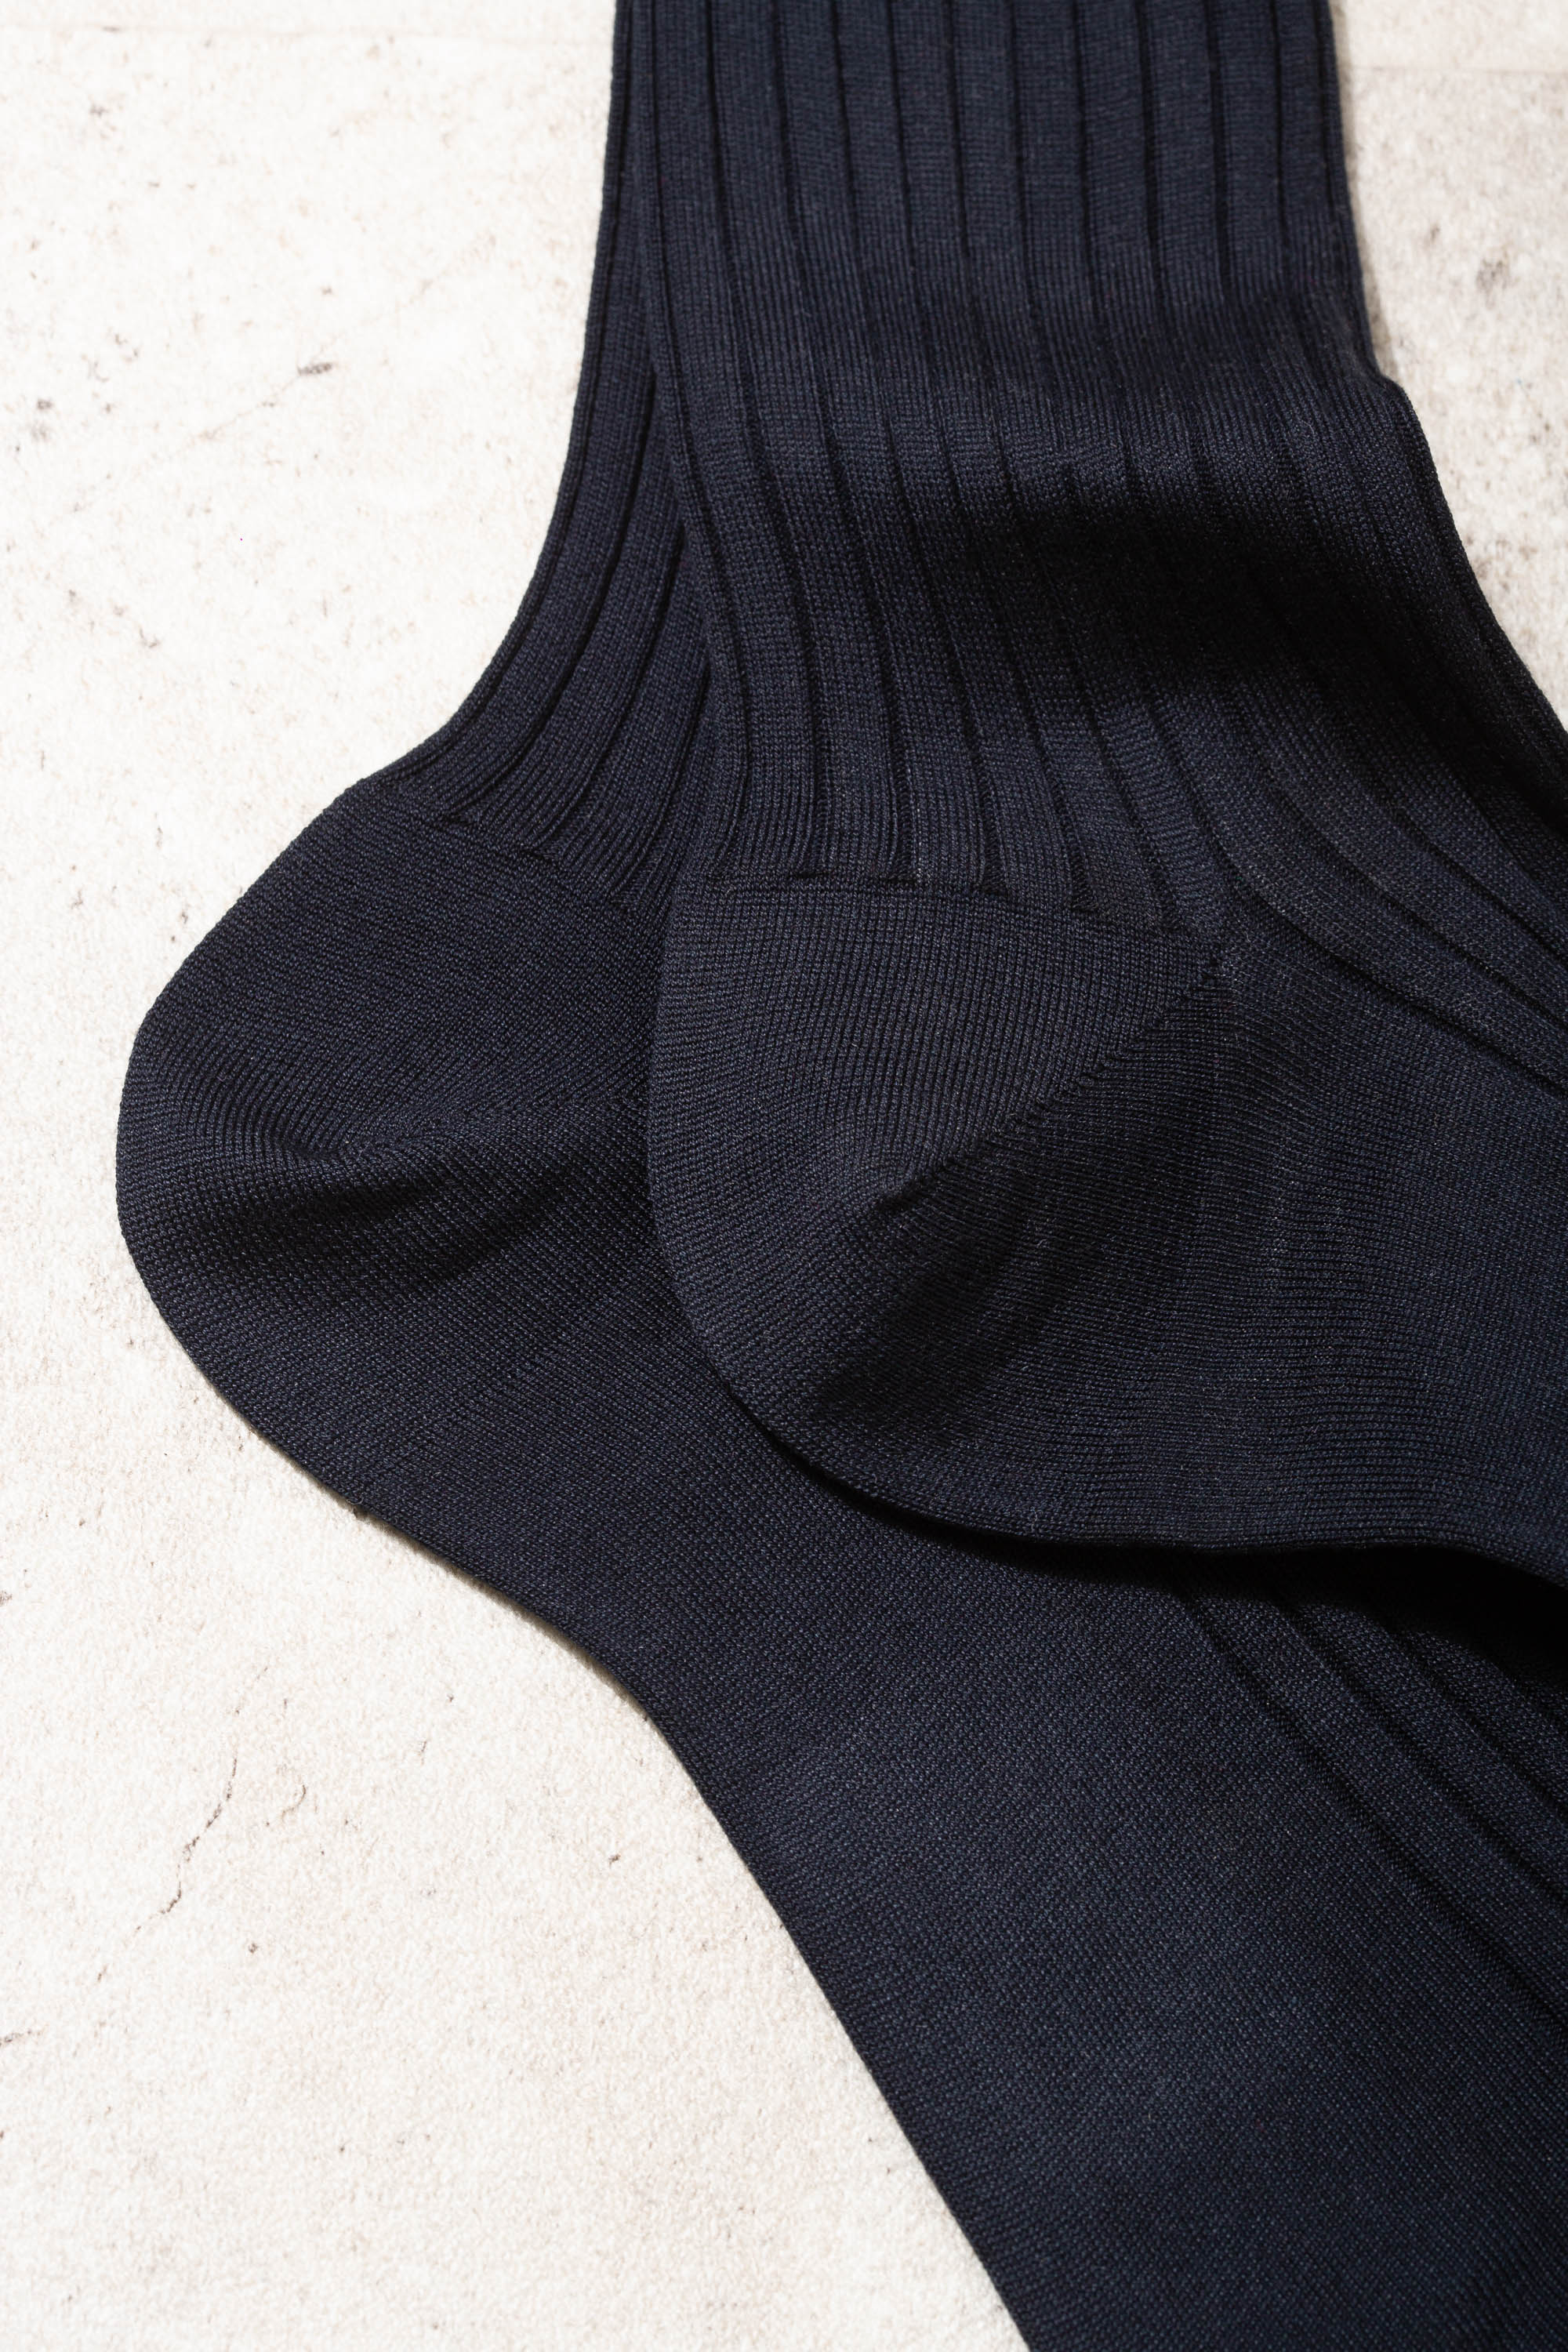 Blue Short Socks - Made in Italy